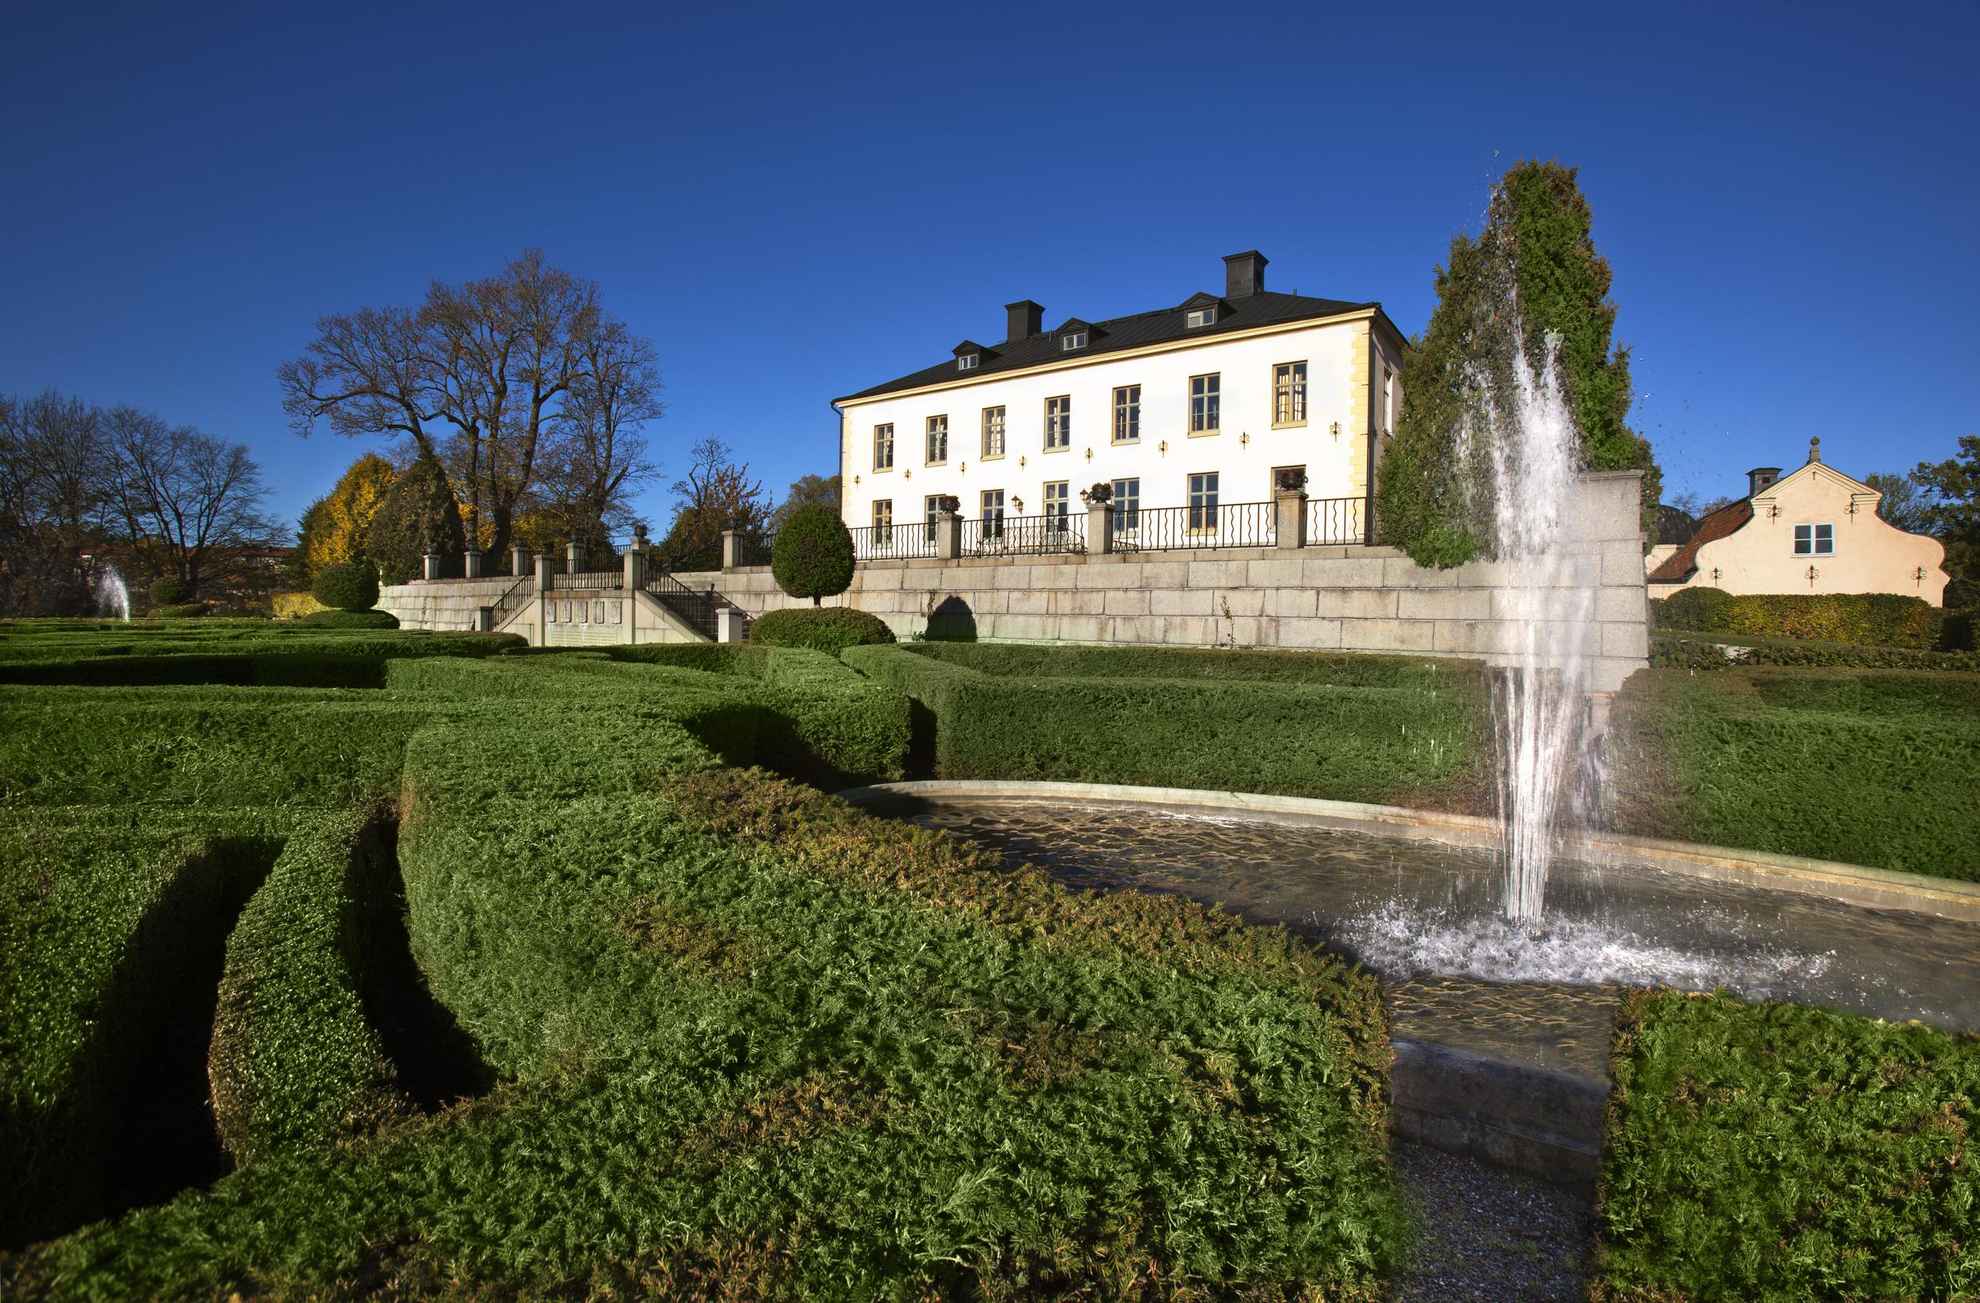 Die Fassade von Schloss Hesselby ist beige. Vom Hof führt eine Treppe hinunter in einen Garten mit einem Springbrunnen.